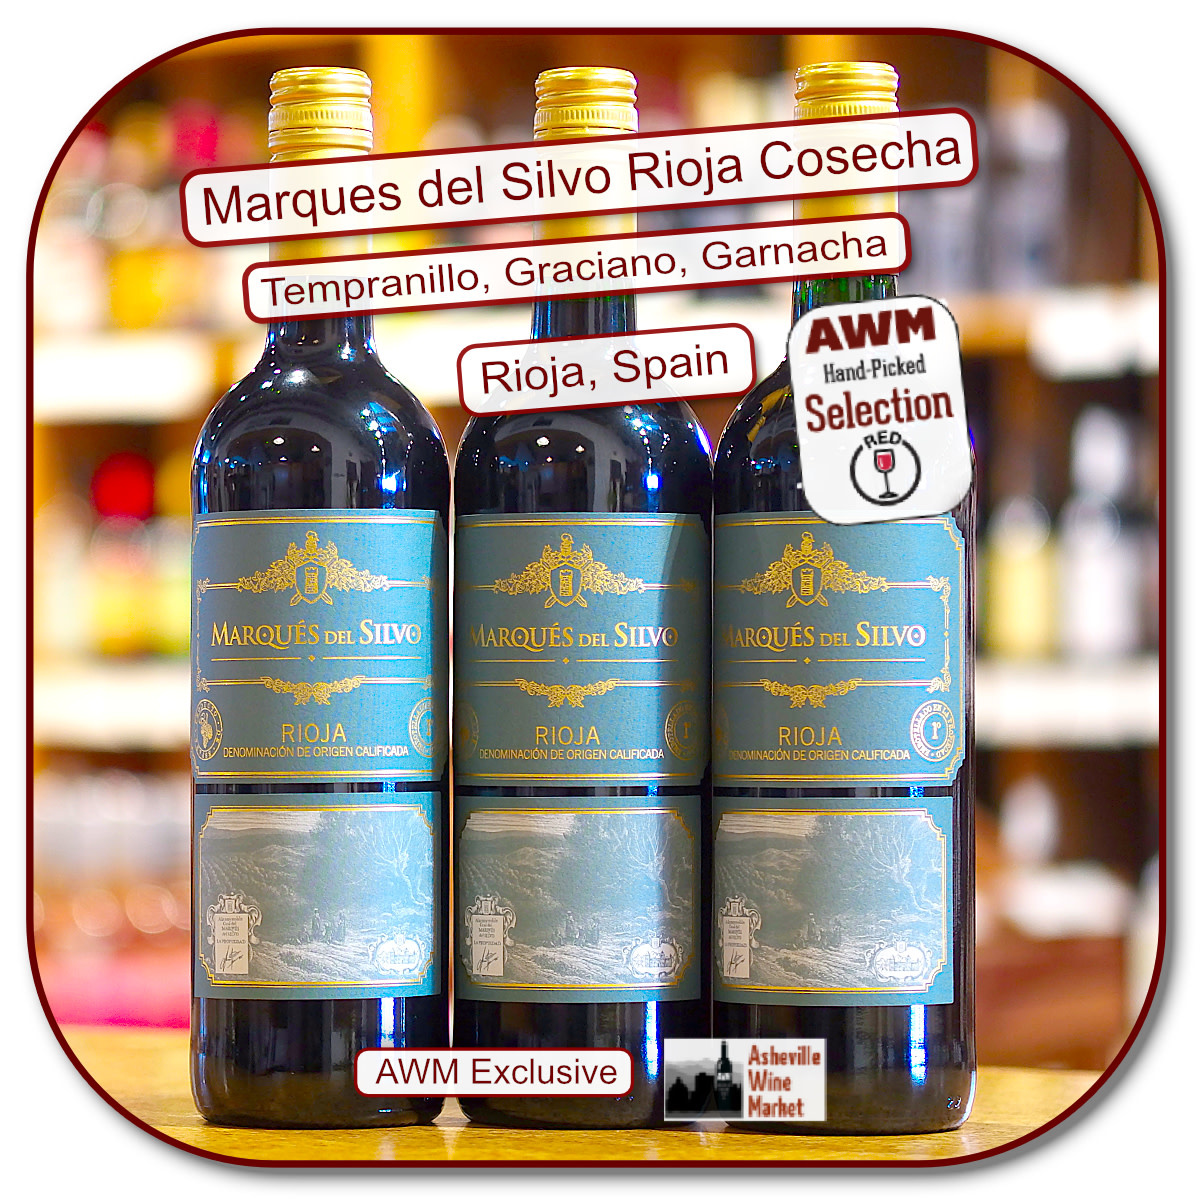 2019 The Marques del Market - Rioja Tinto Wine Asheville Cosecha Silvo